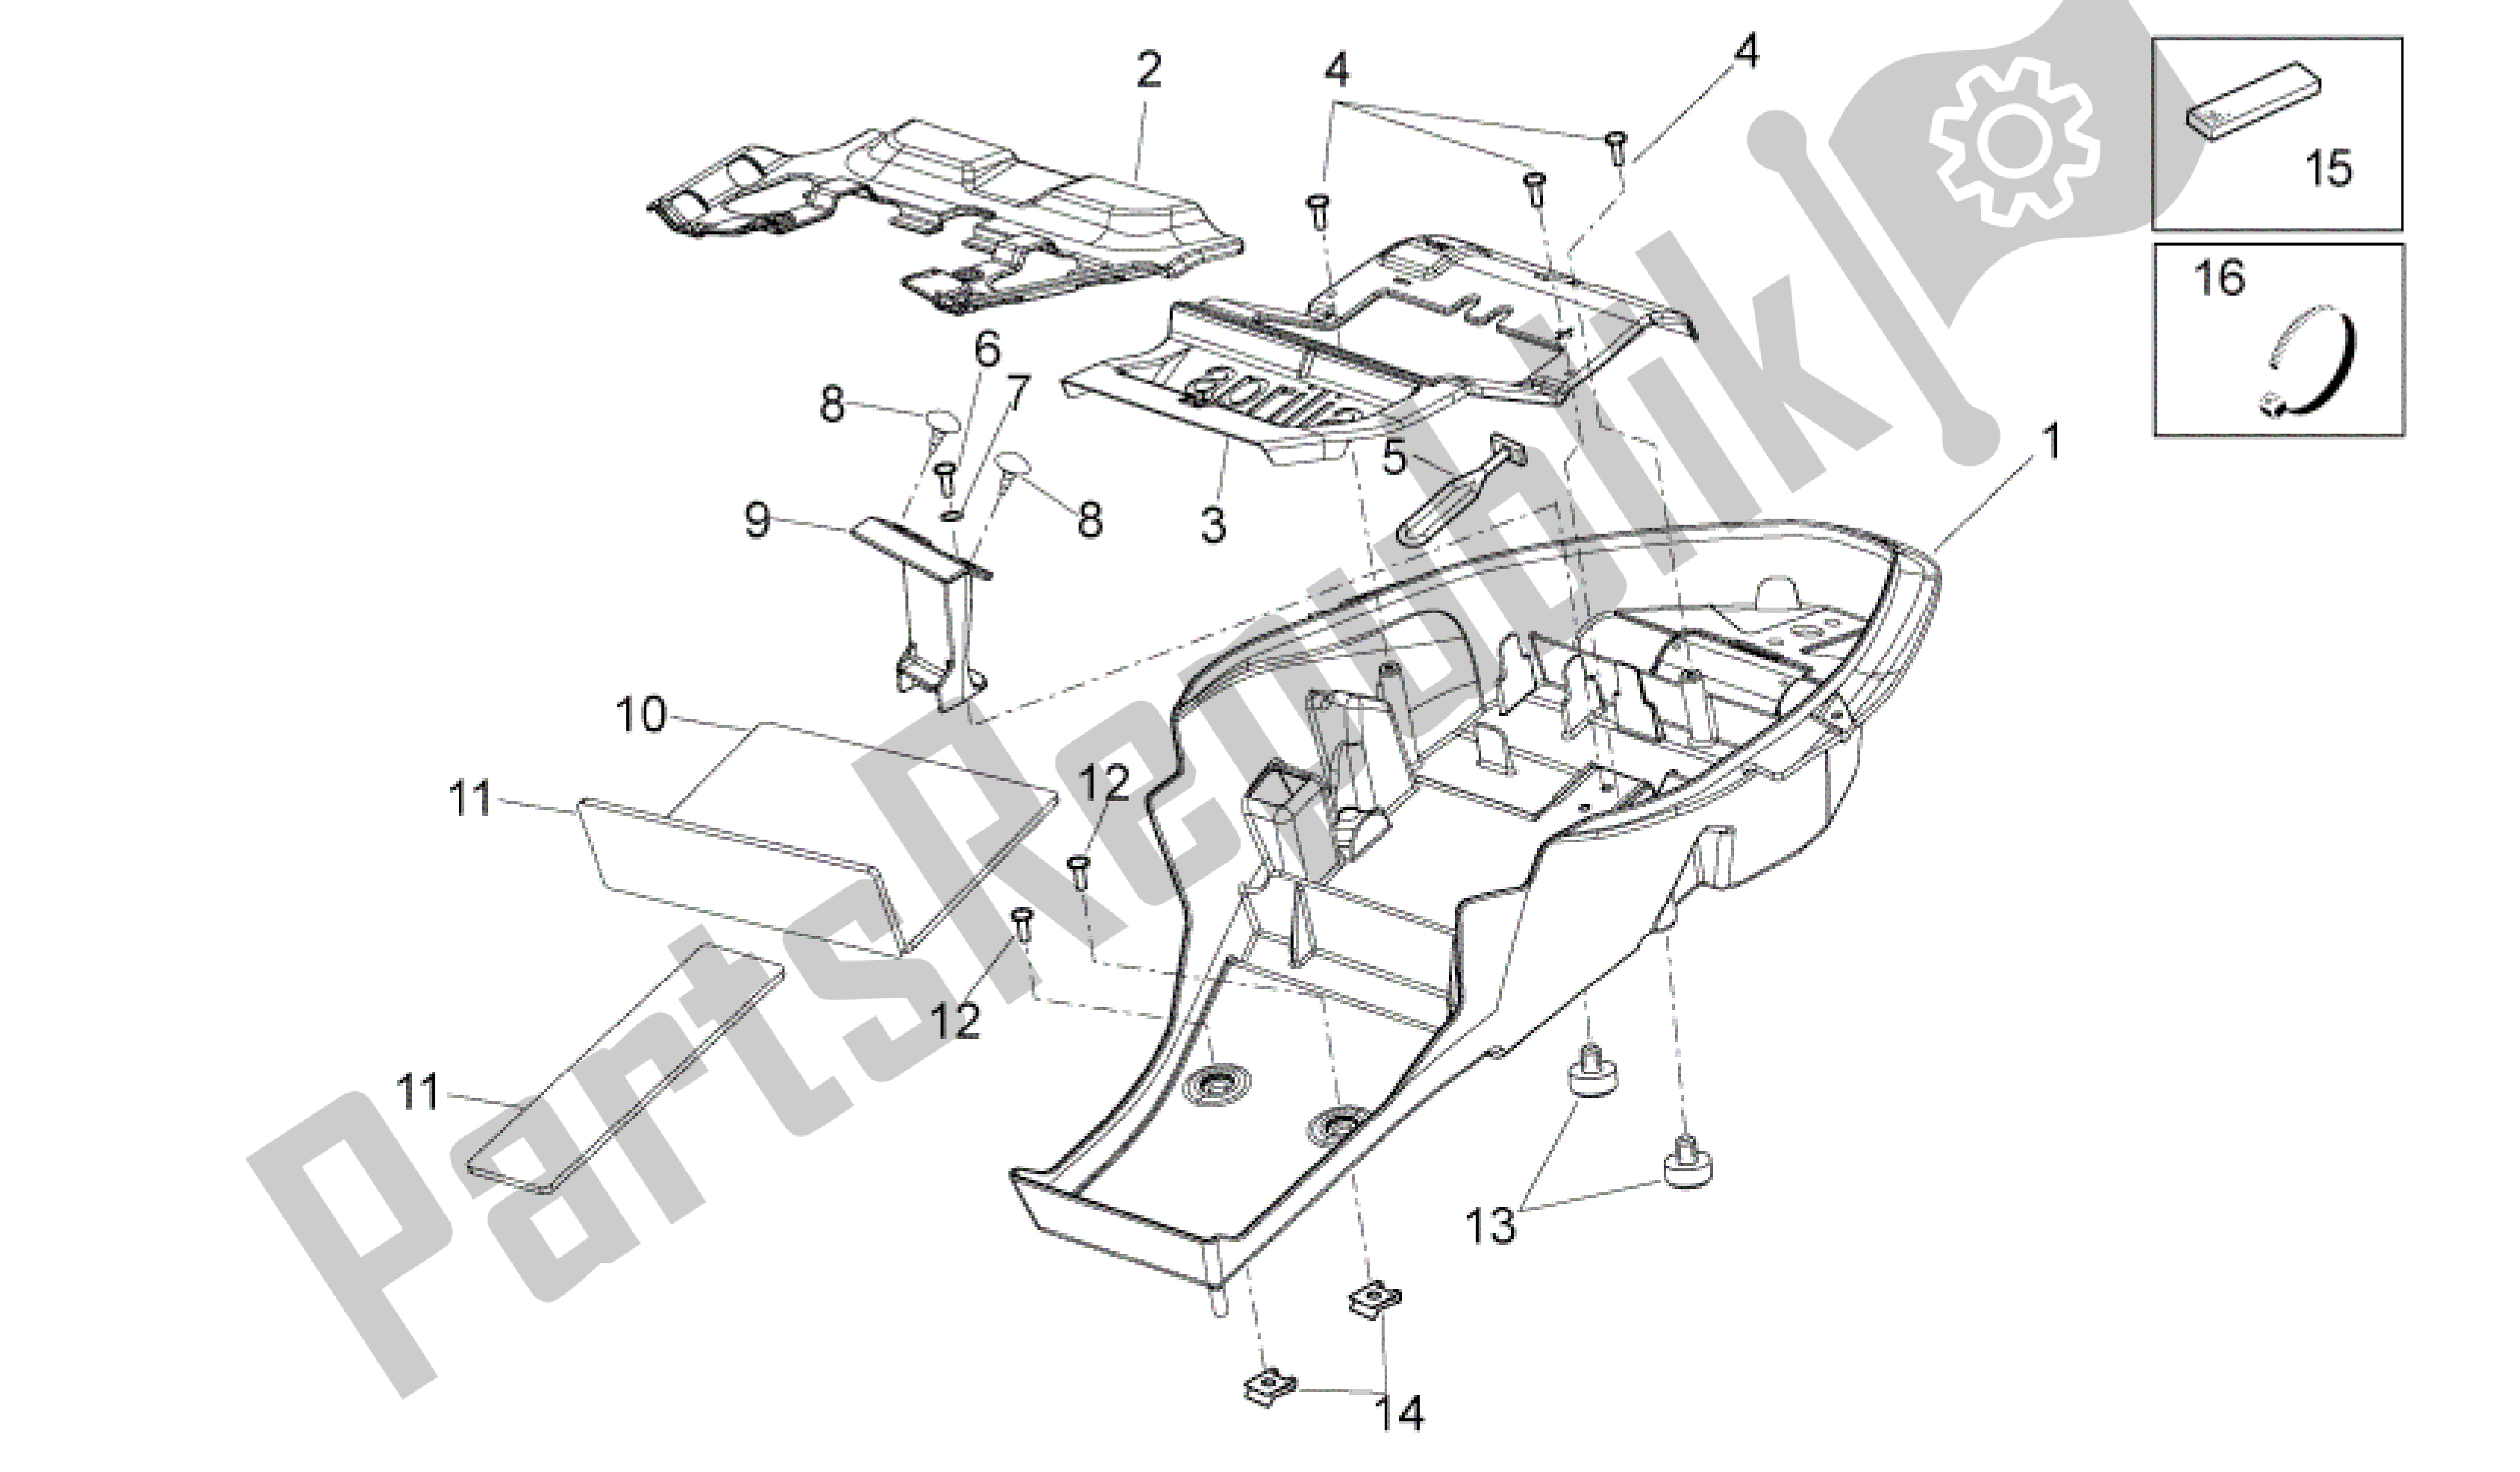 All parts for the Rear Body I of the Aprilia Dorsoduro 1200 2010 - 2013